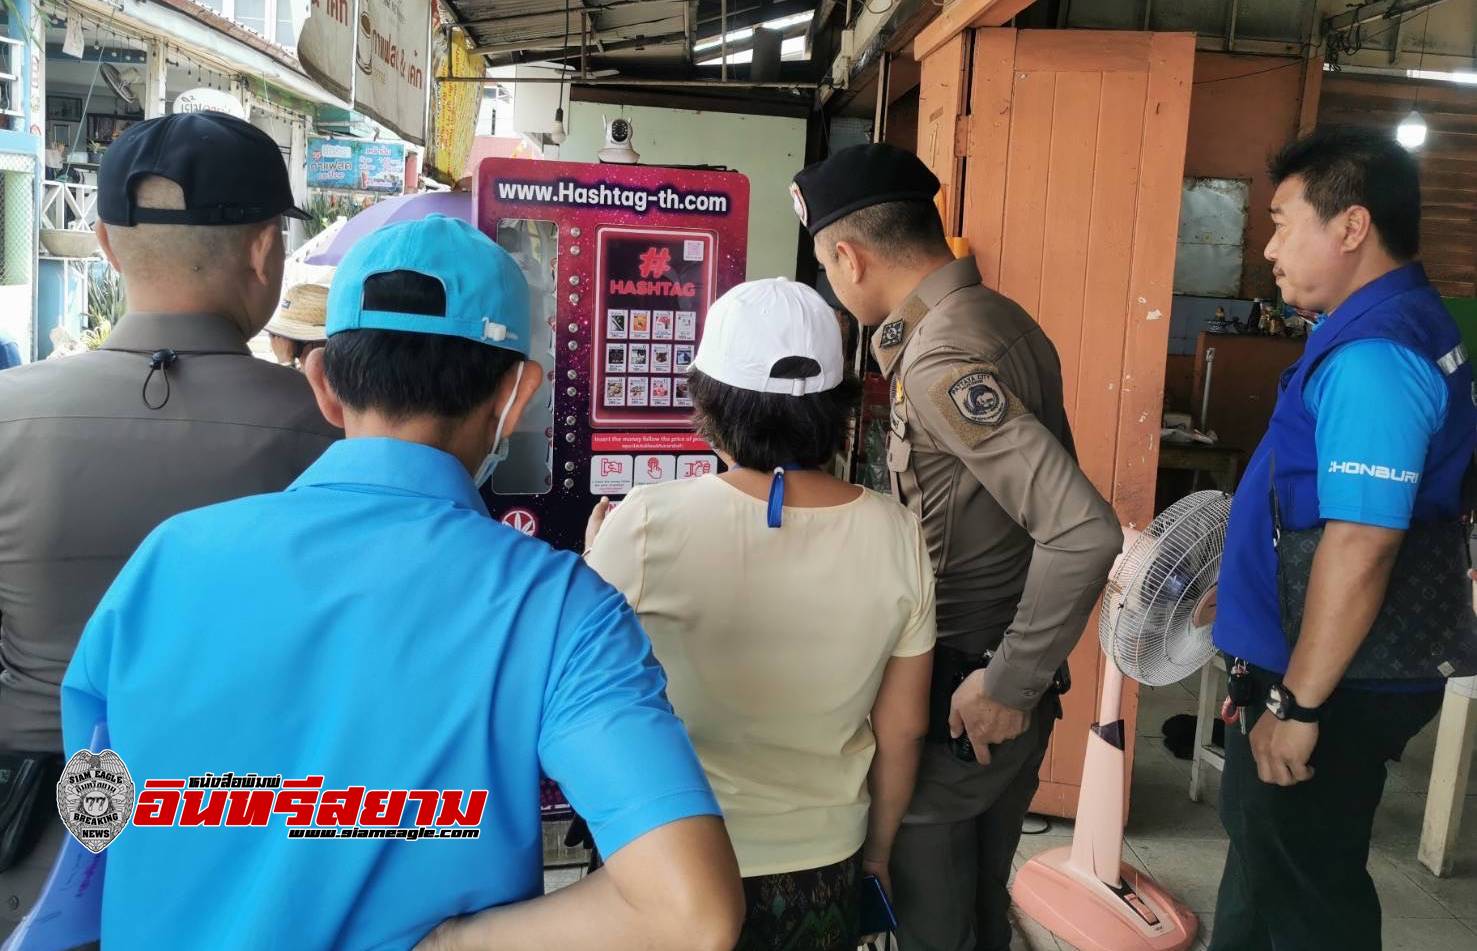 ชลบุรี-ตำรวจพัทยาร่วมปกครอง บุกยึดตู้กดบุหรี่ไฟฟ้า กัญชา หลังนายทุนหัวใส ตั้งบริการลูกค้าเกาะล้าน